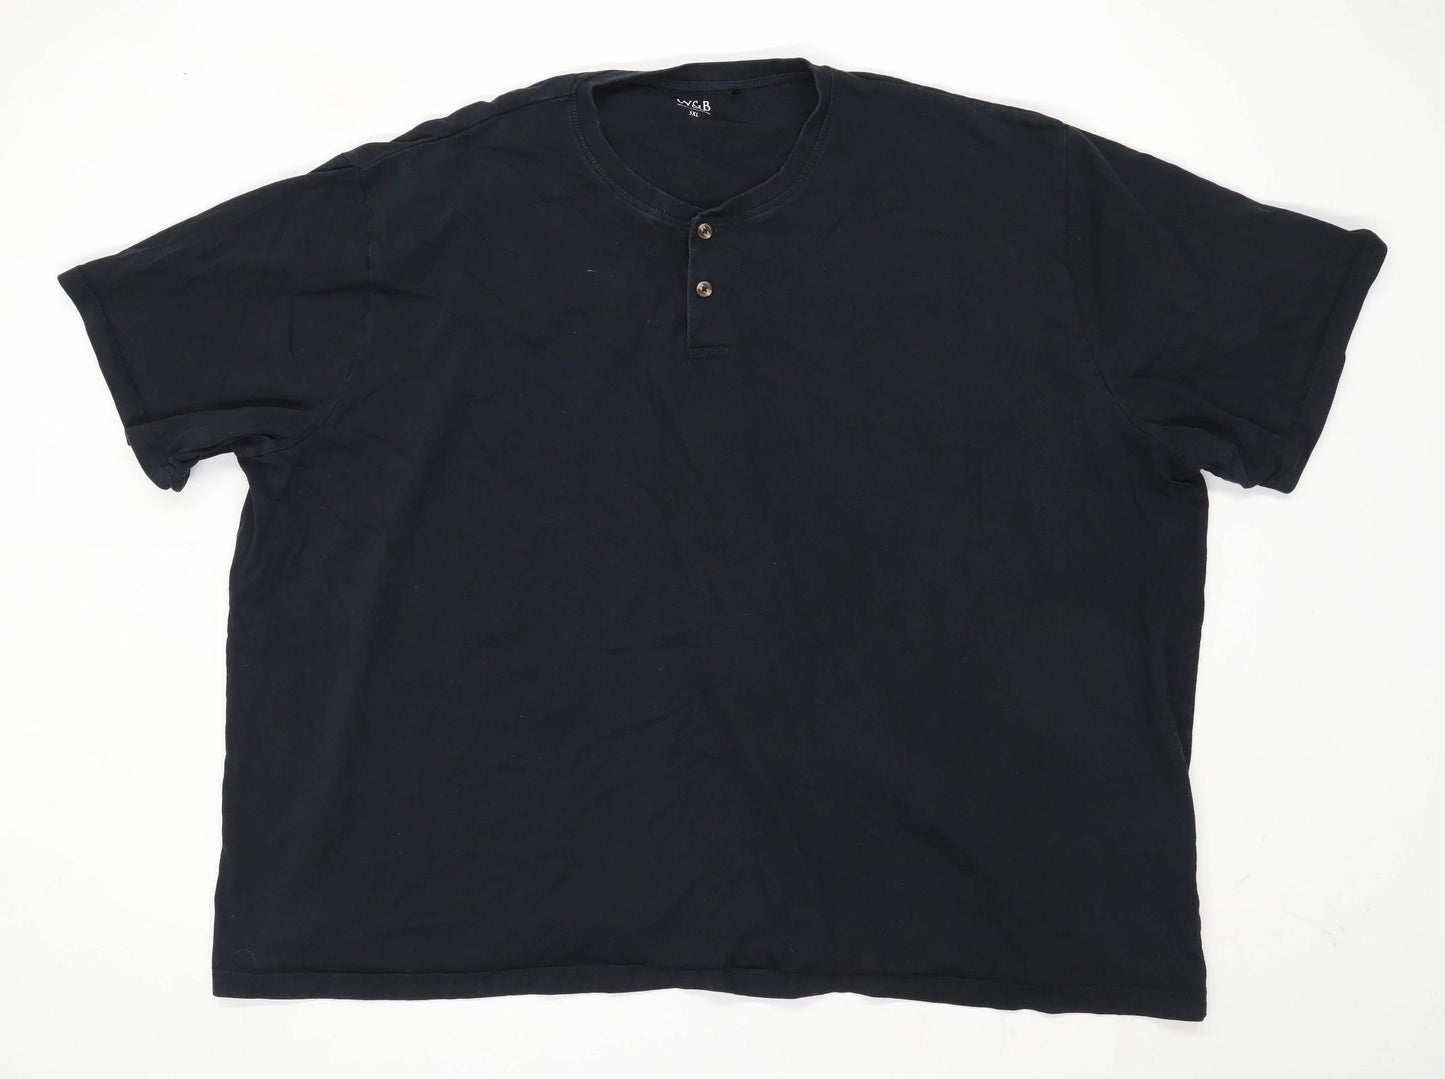 W&B Mens Size 5XL Cotton Black T-Shirt